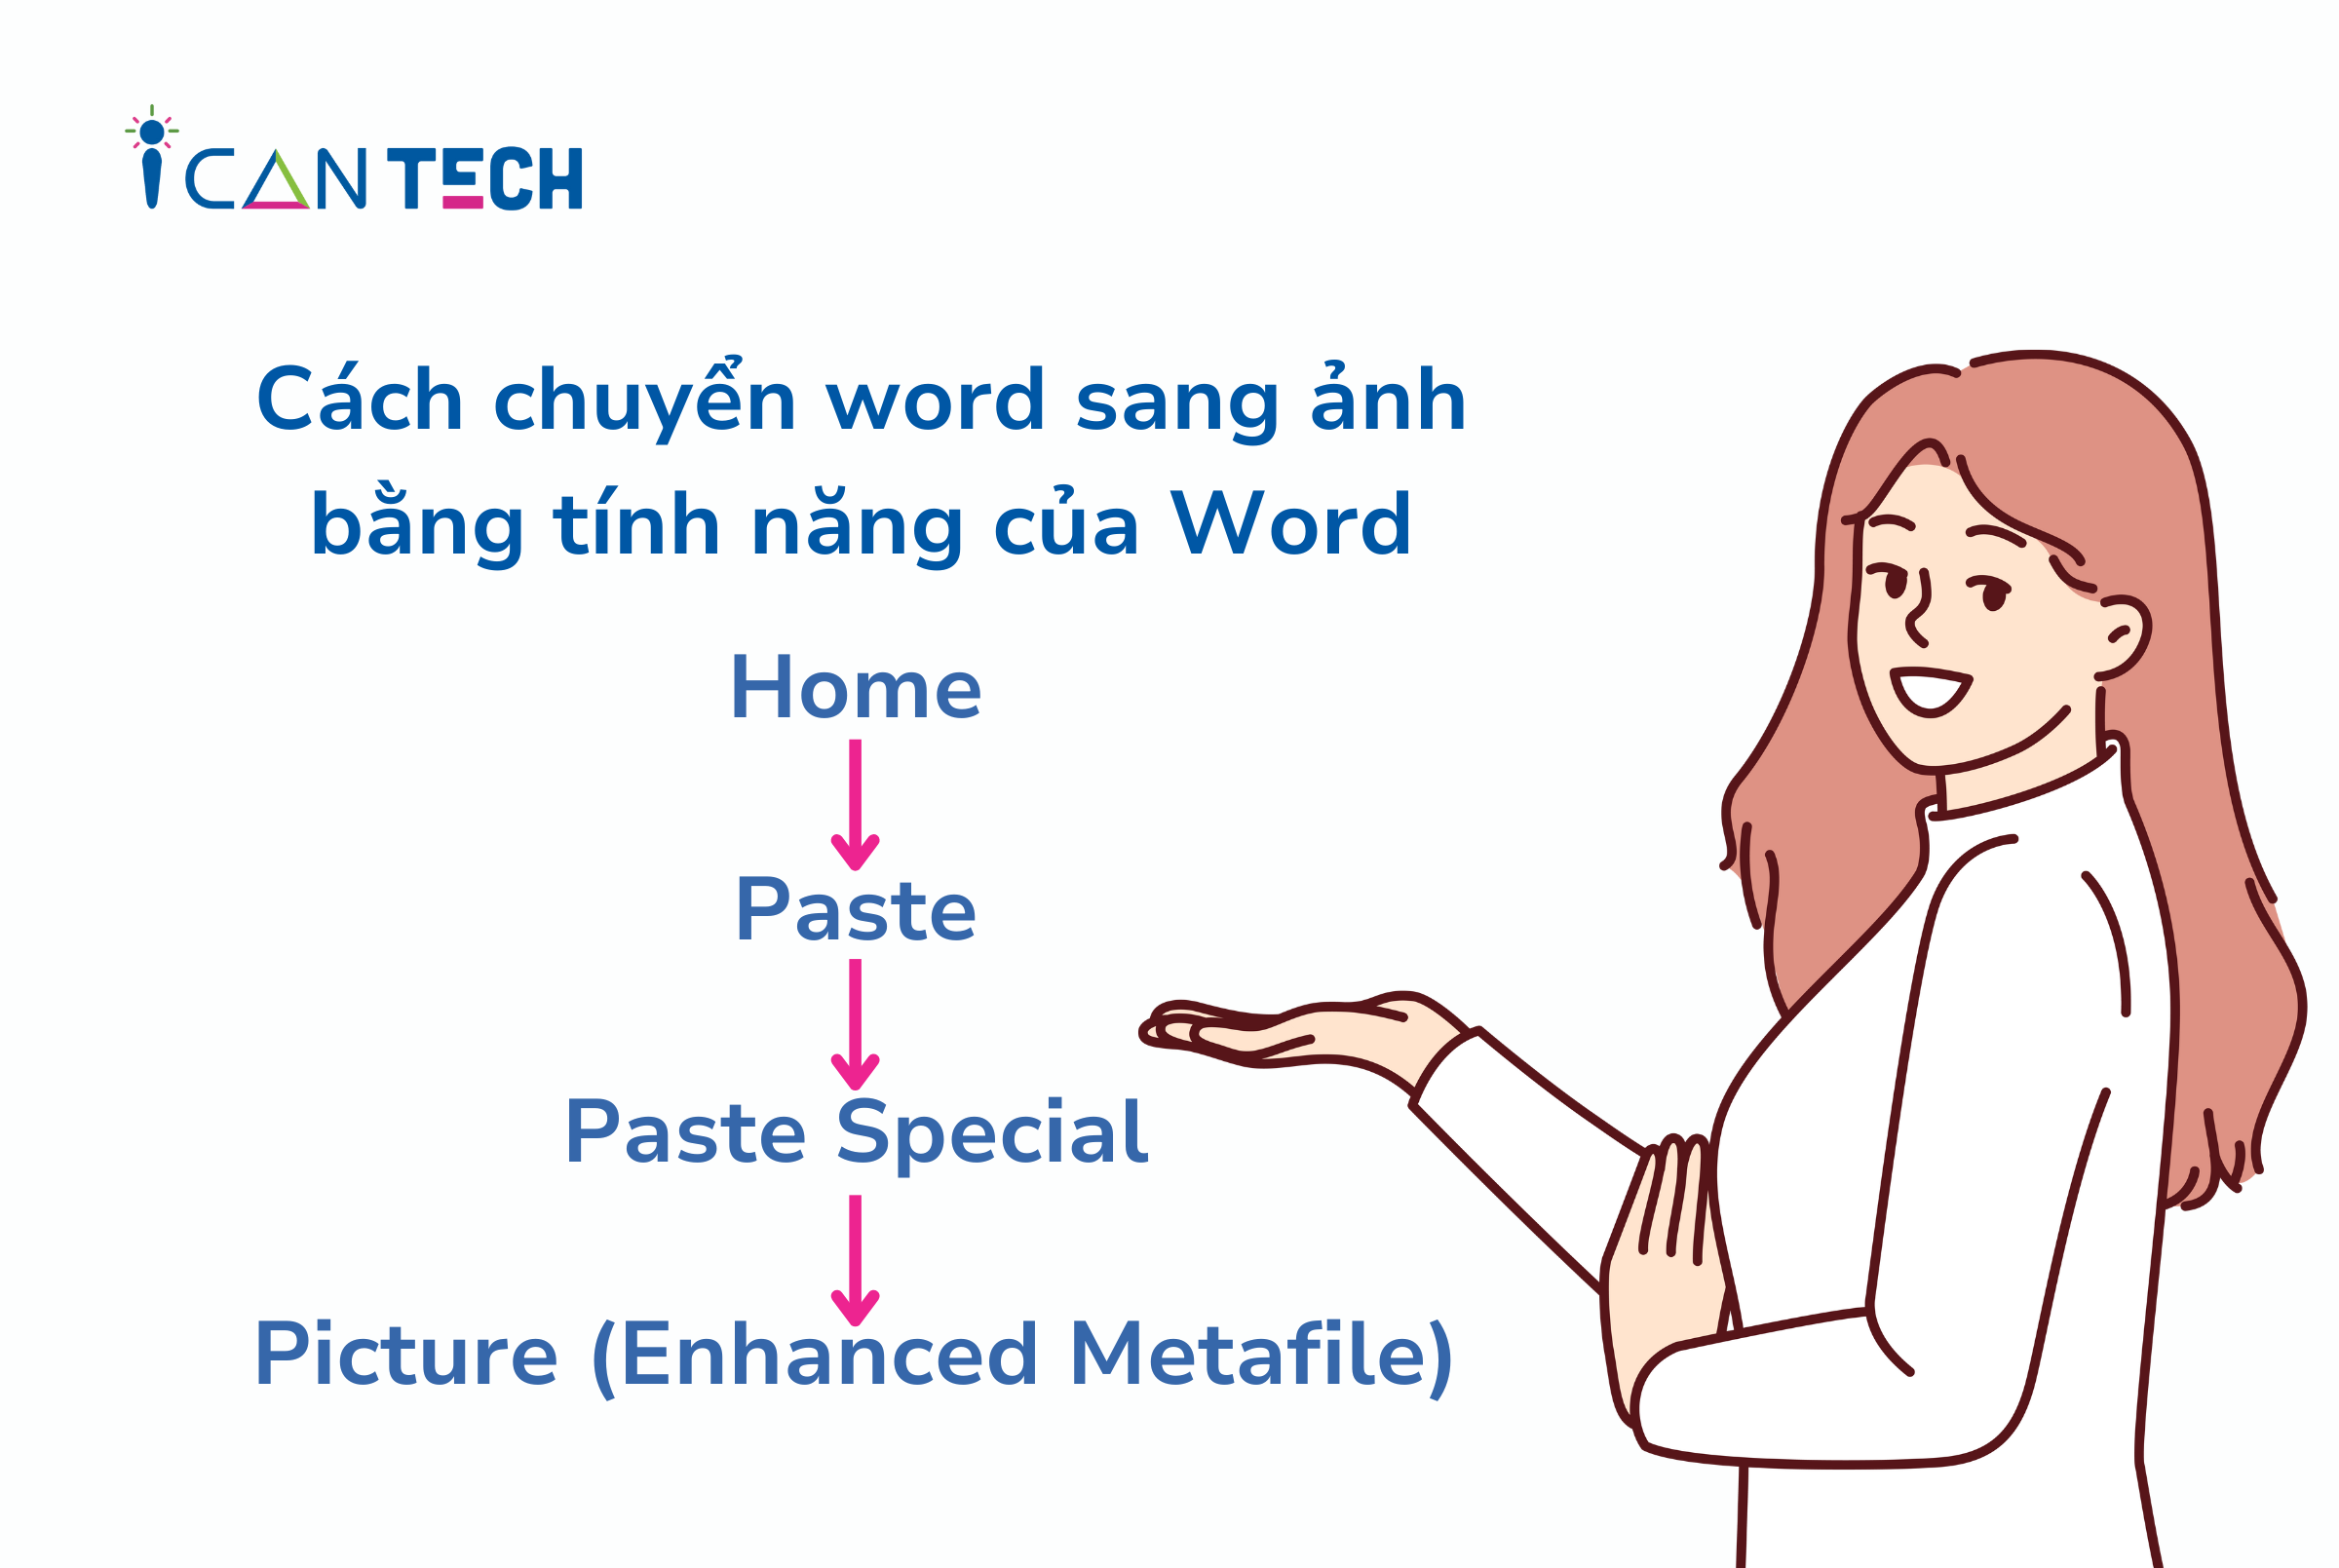 cach-chuyen-word-sang-anh-bang-tinh-nang-cua-word